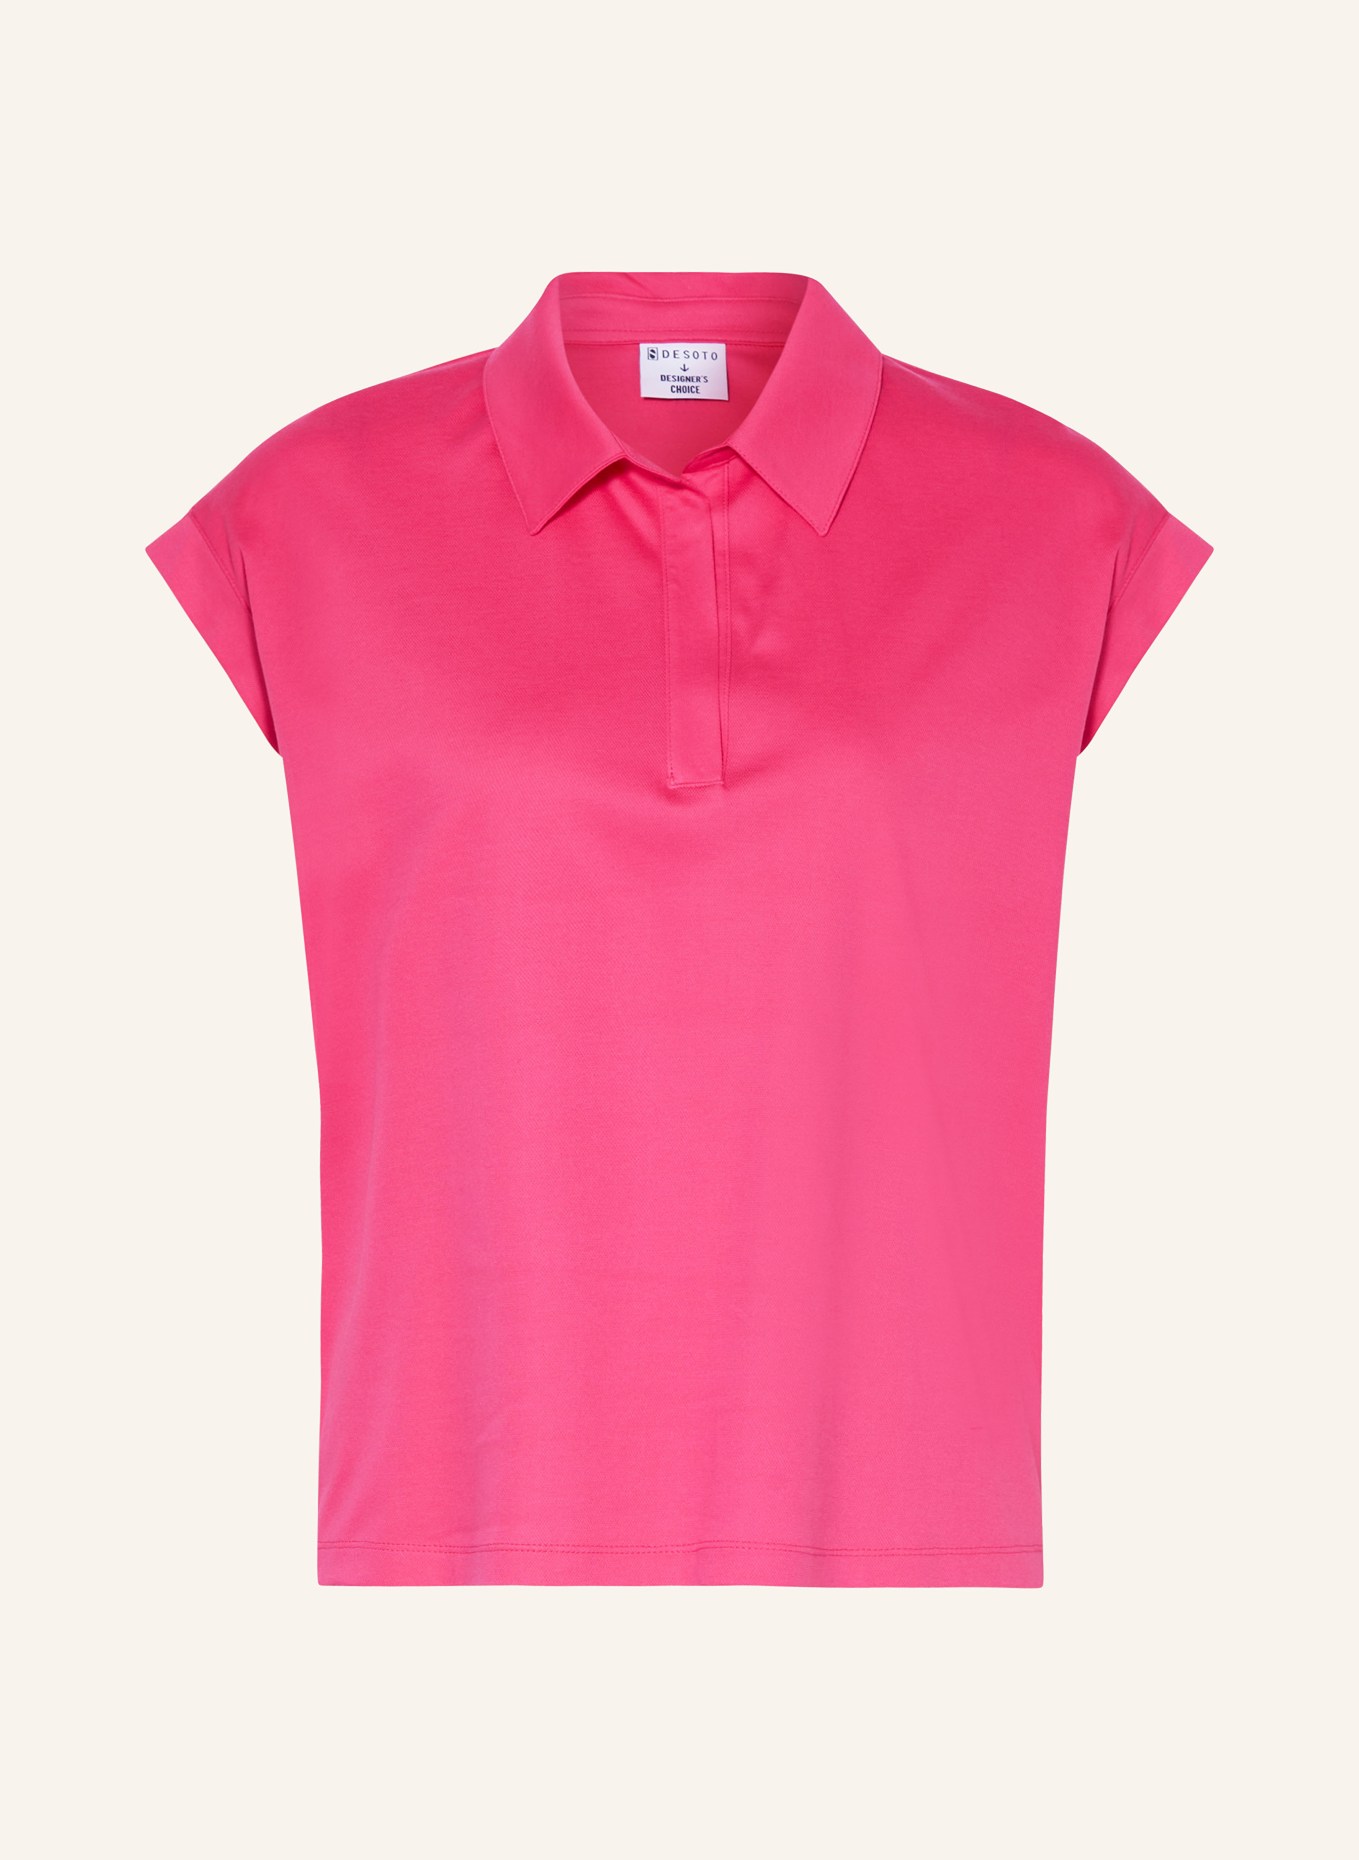 DESOTO Piqué polo shirt, Color: PINK (Image 1)